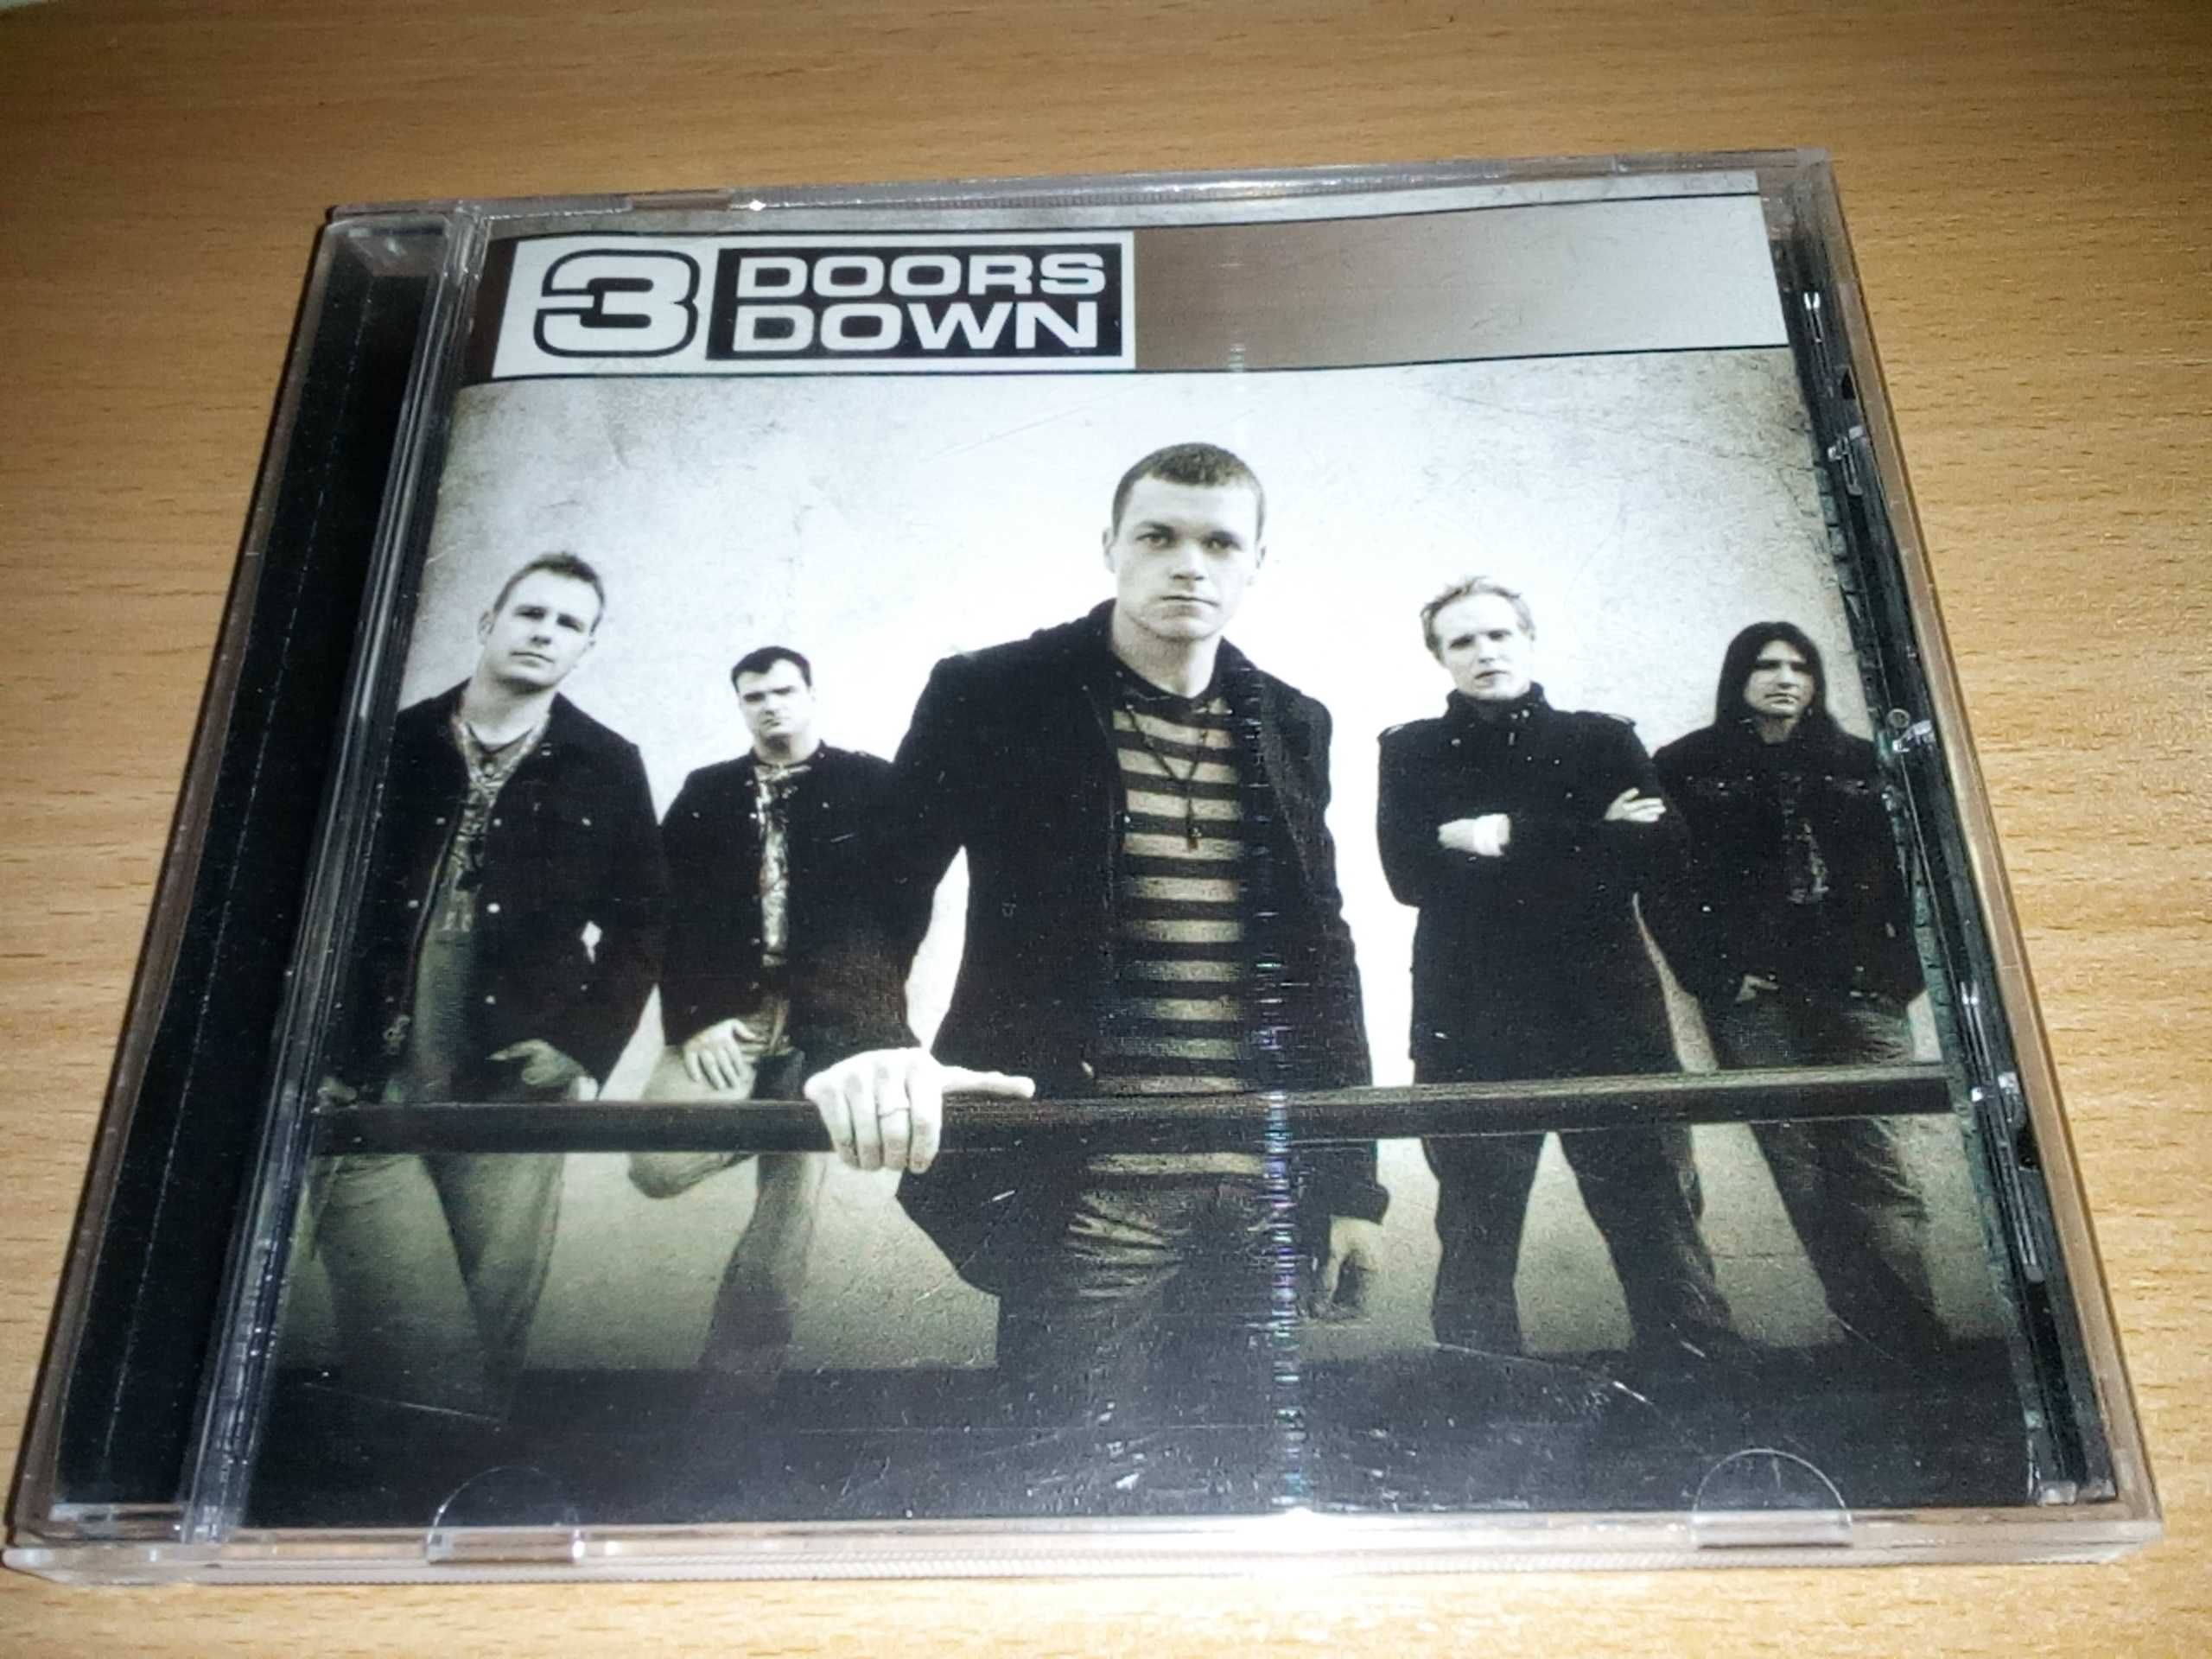 3 Doors Down – Away From The Sun, 3 Doors Down